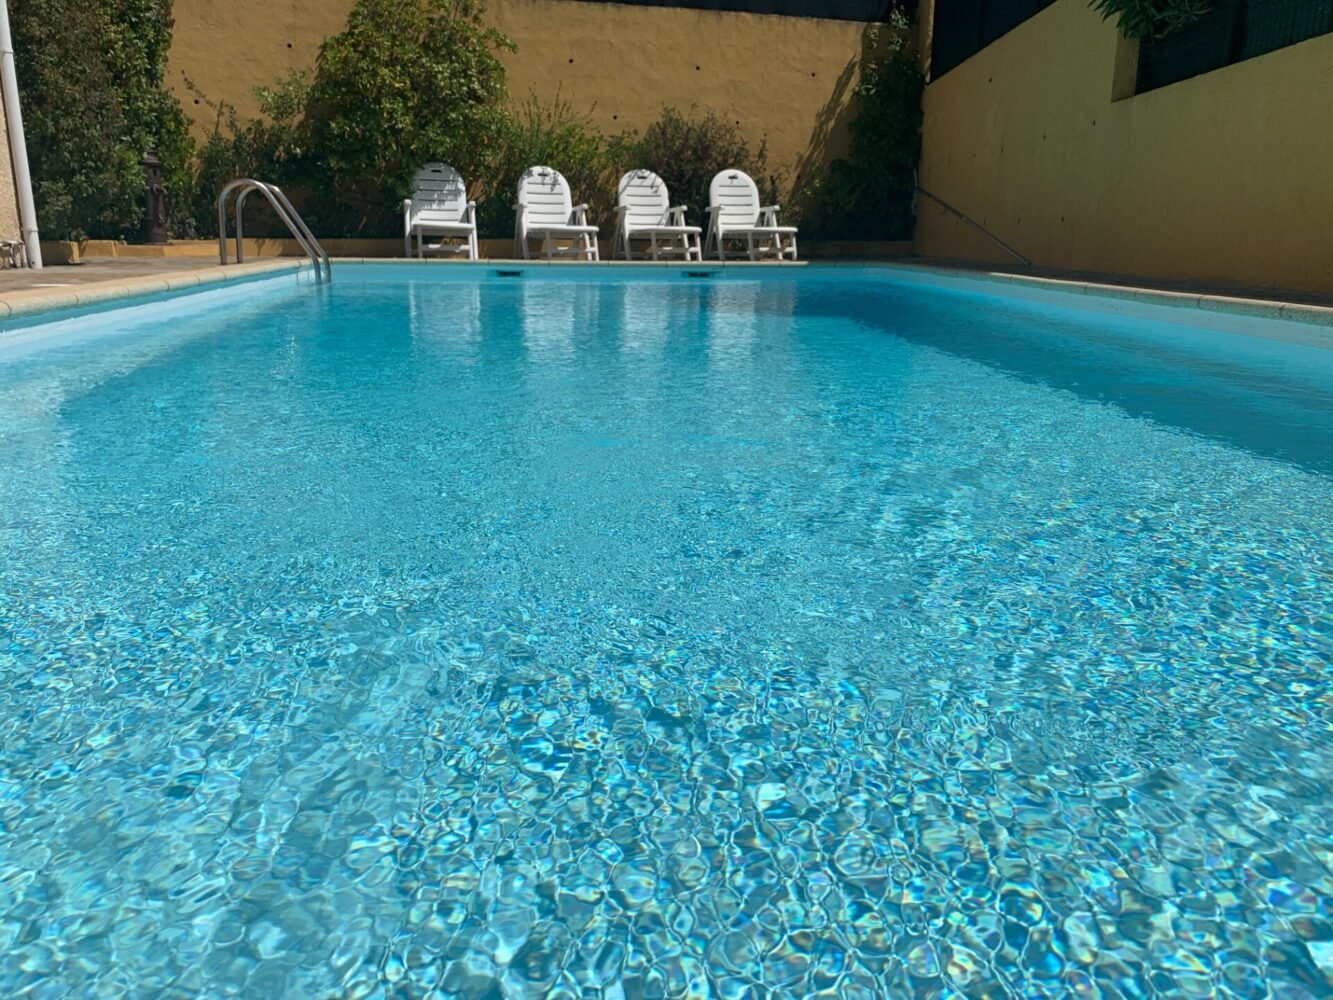 Maison 7 pièces de 203m2 avec piscine à Ajaccio diapo 3